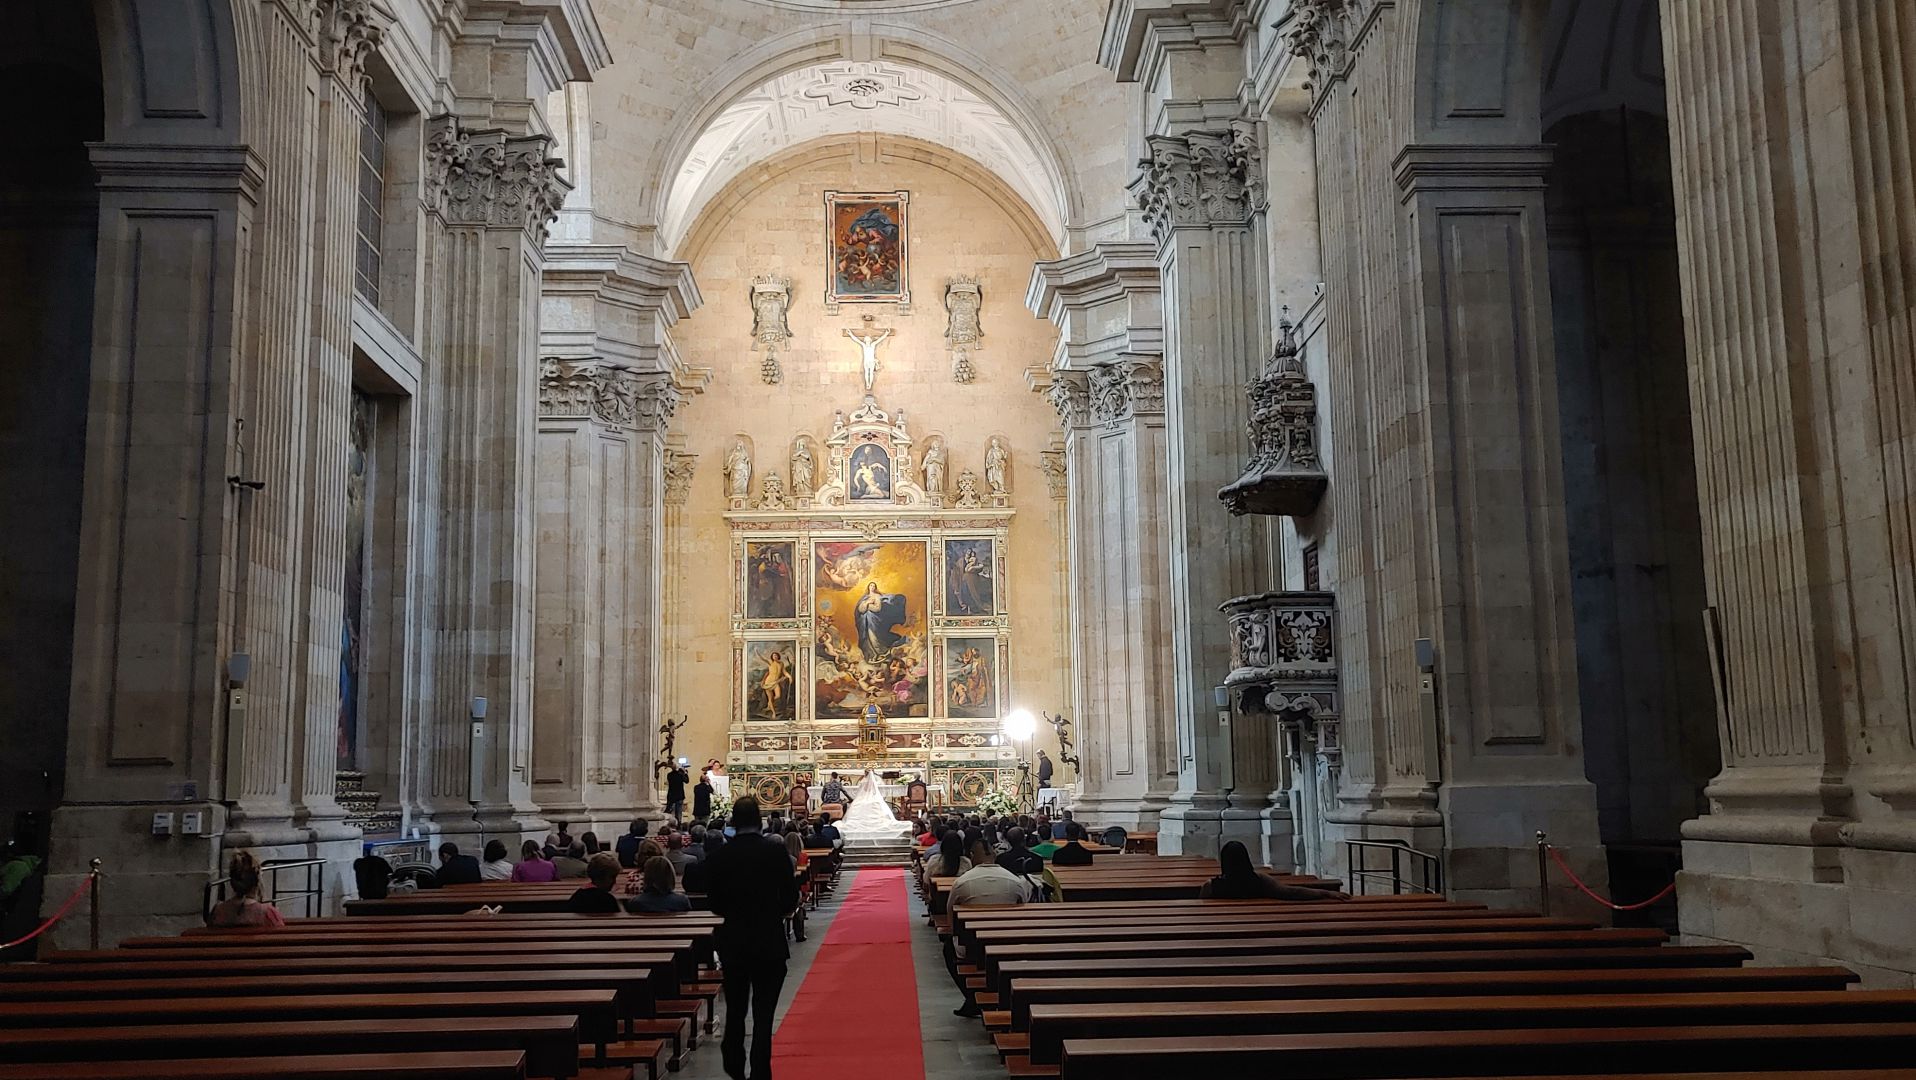 SALAMANCA - ich werfe noch einen Blick in die gegenüberliegende Kirche "Iglesia de la Purísima", hier findet gerade eine Trauung statt